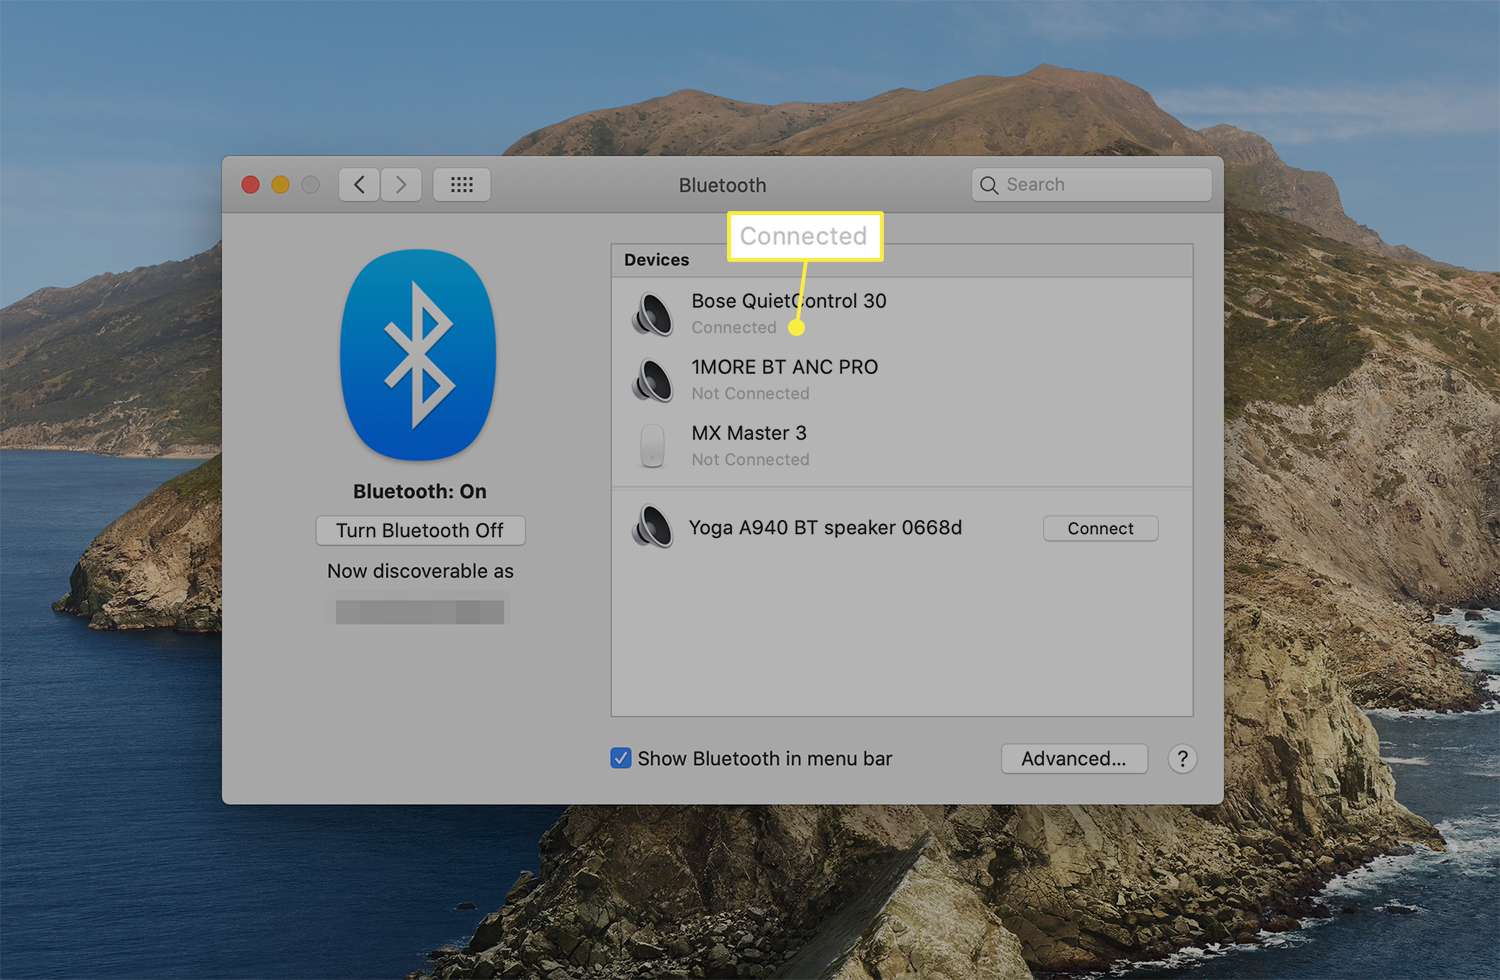 Připojená zpráva uvedená níže pod připojeným zařízením Bluetooth z předvoleb Bluetooth macOS